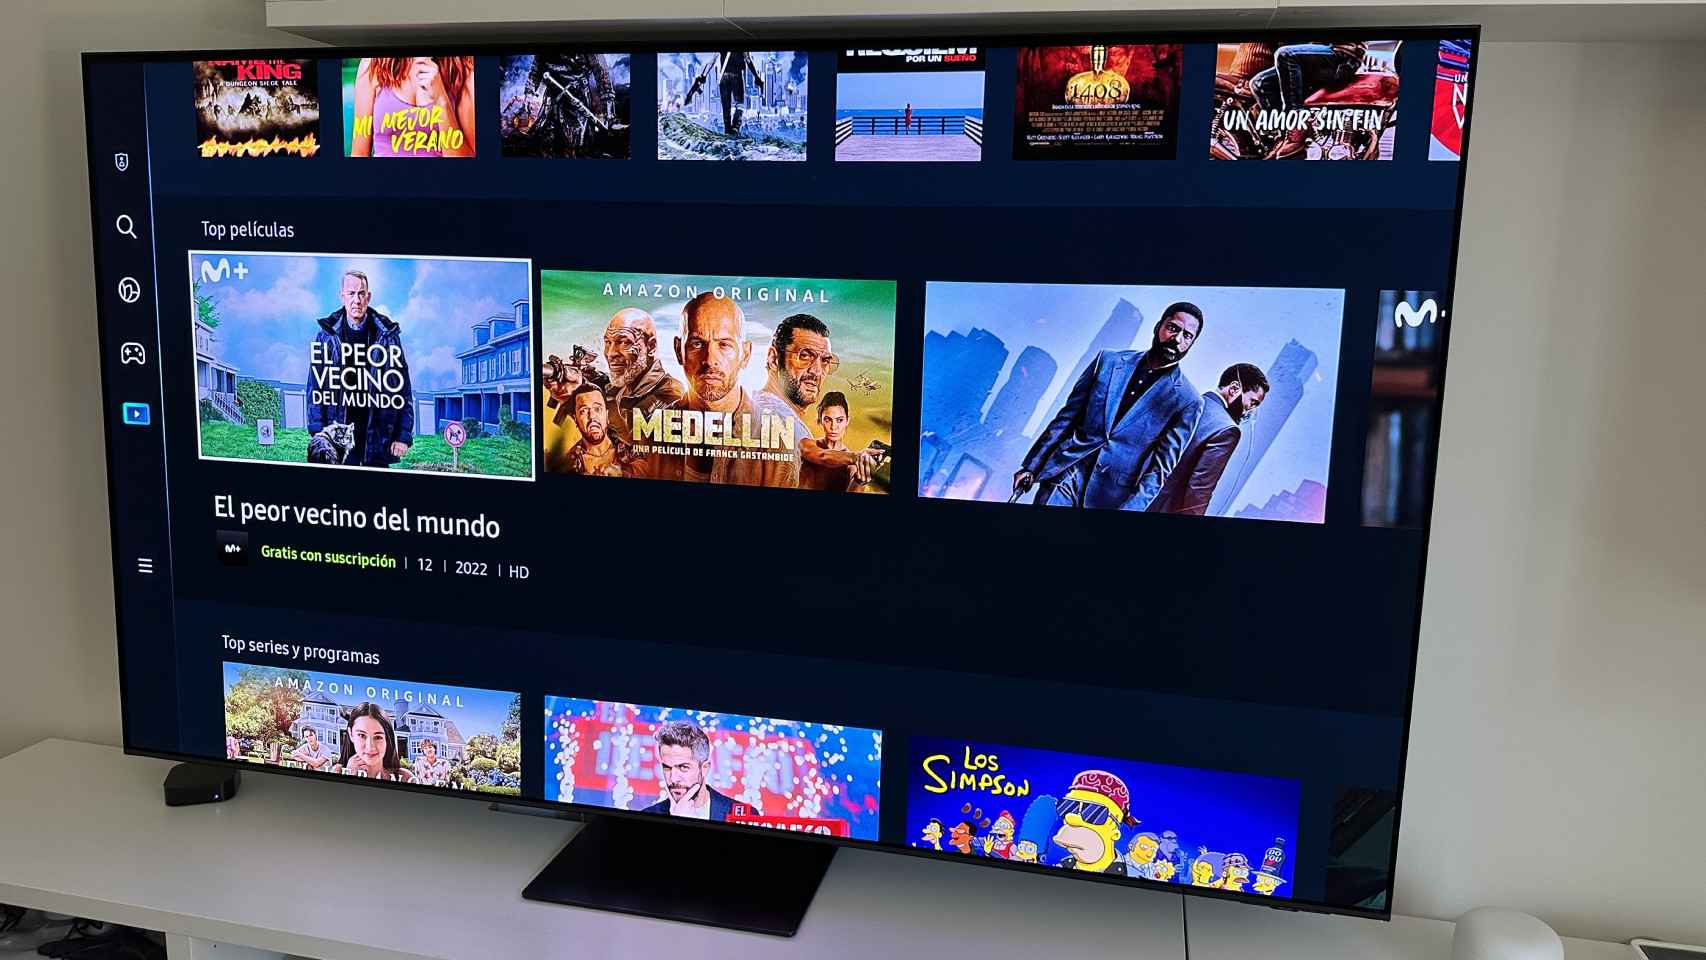 Esta smart TV 4K de Samsung sale ahora más barata en : 55